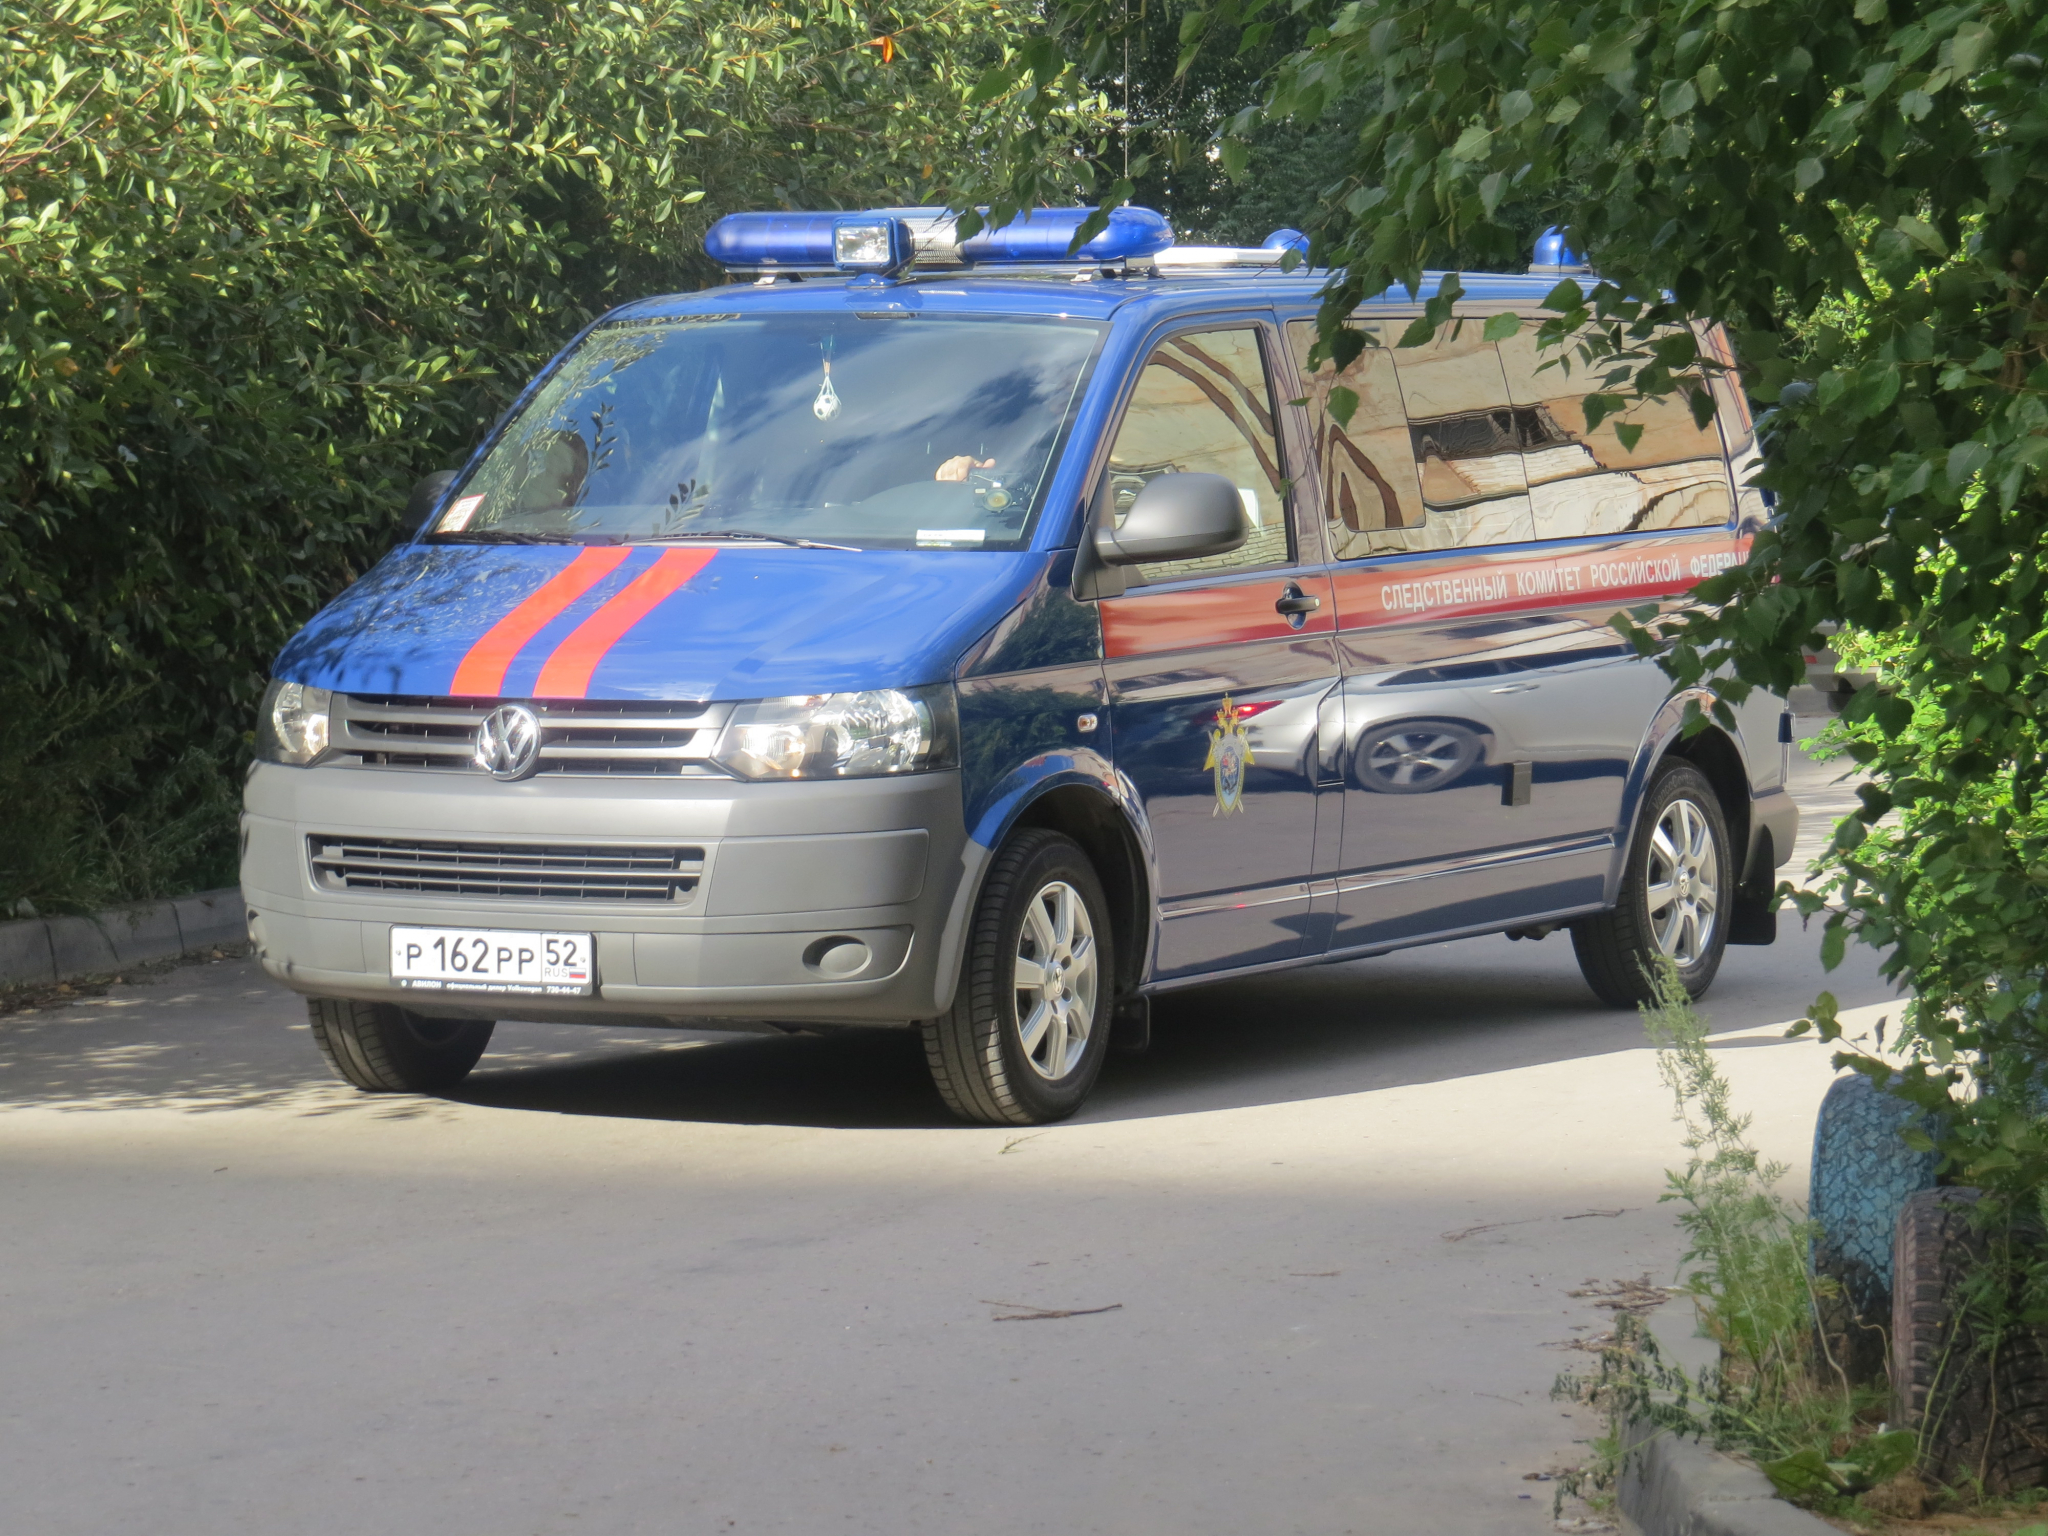 Пьяный правоохранитель разбил лобовой стекло чужого автомобиля на Нижневолжской набережной